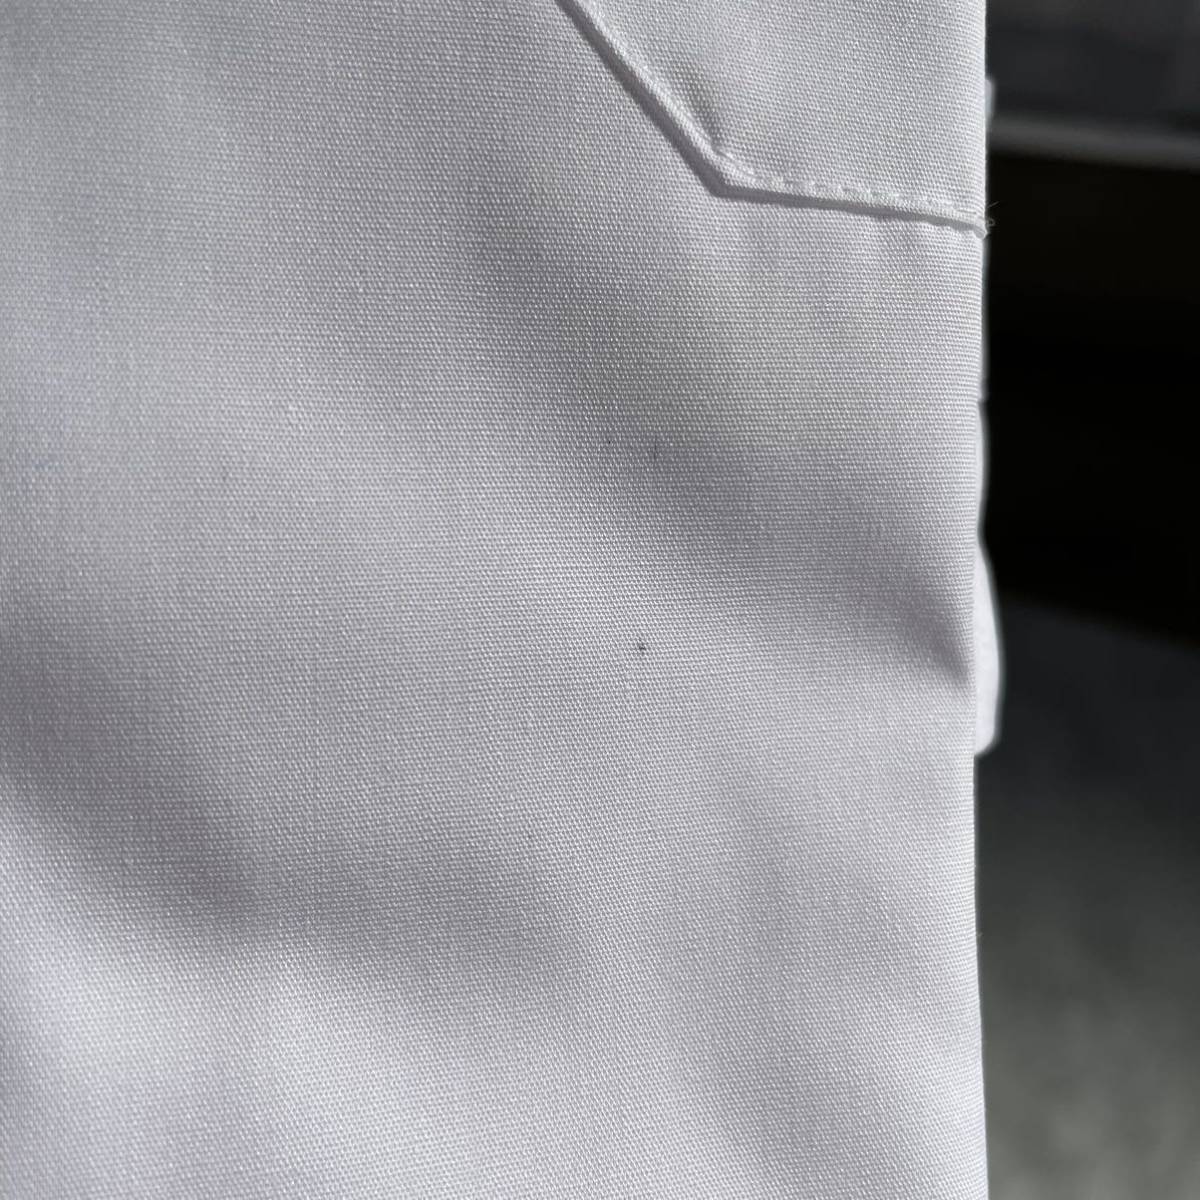 【送料無料】未使用 シミ汚れあり 綿55% 長袖 ワイシャツ L 41-82 白 無地 メンズ ビジネス フォーマル 就活 面接 冠婚葬祭 リクルート